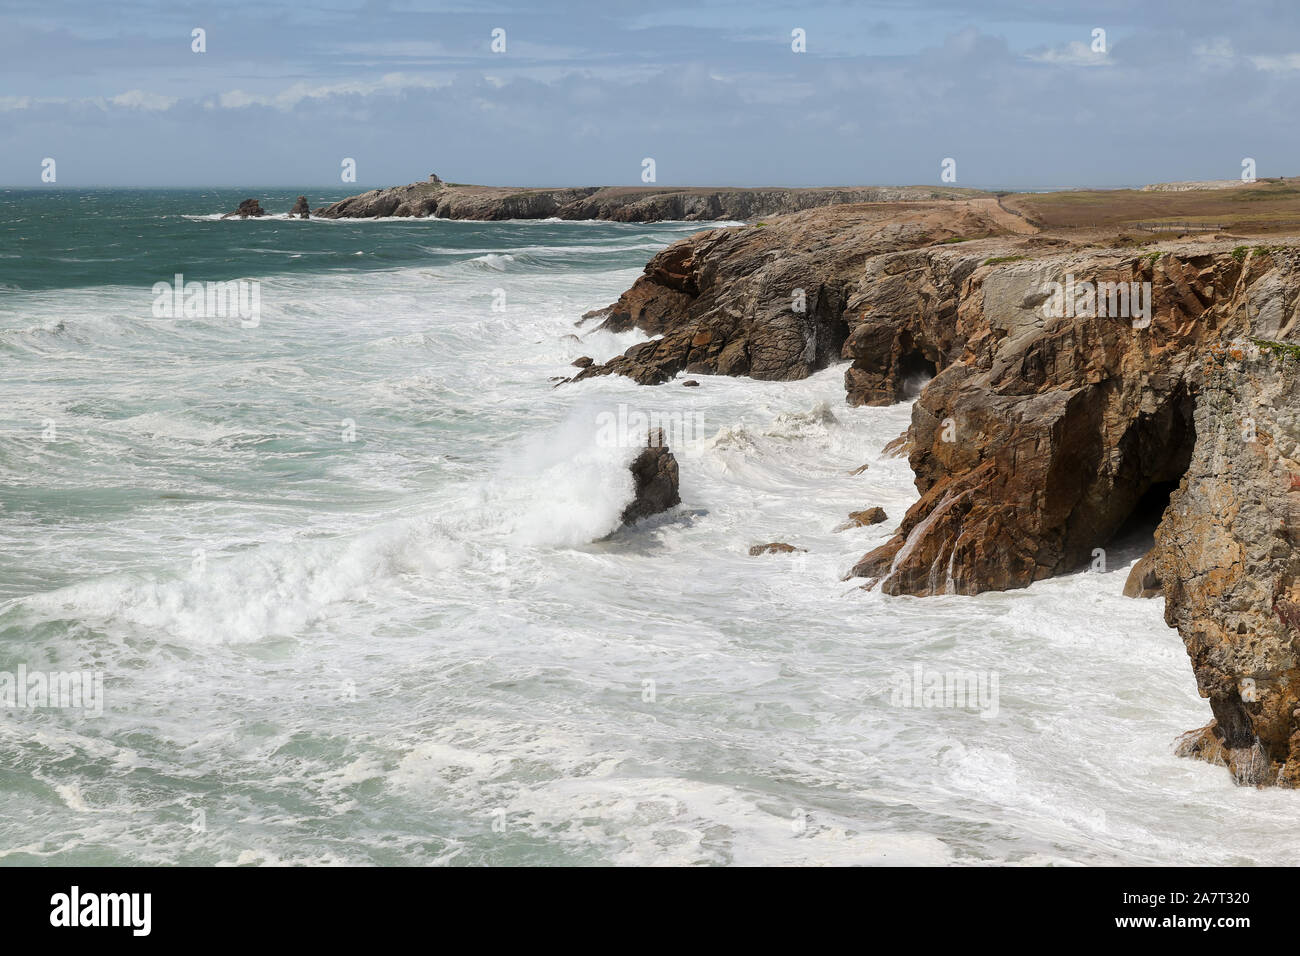 Cote Sauvage - starke Wellen des Atlantik auf wilden Küste der Halbinsel von Quiberon, Bretagne, Frankreich Stockfoto